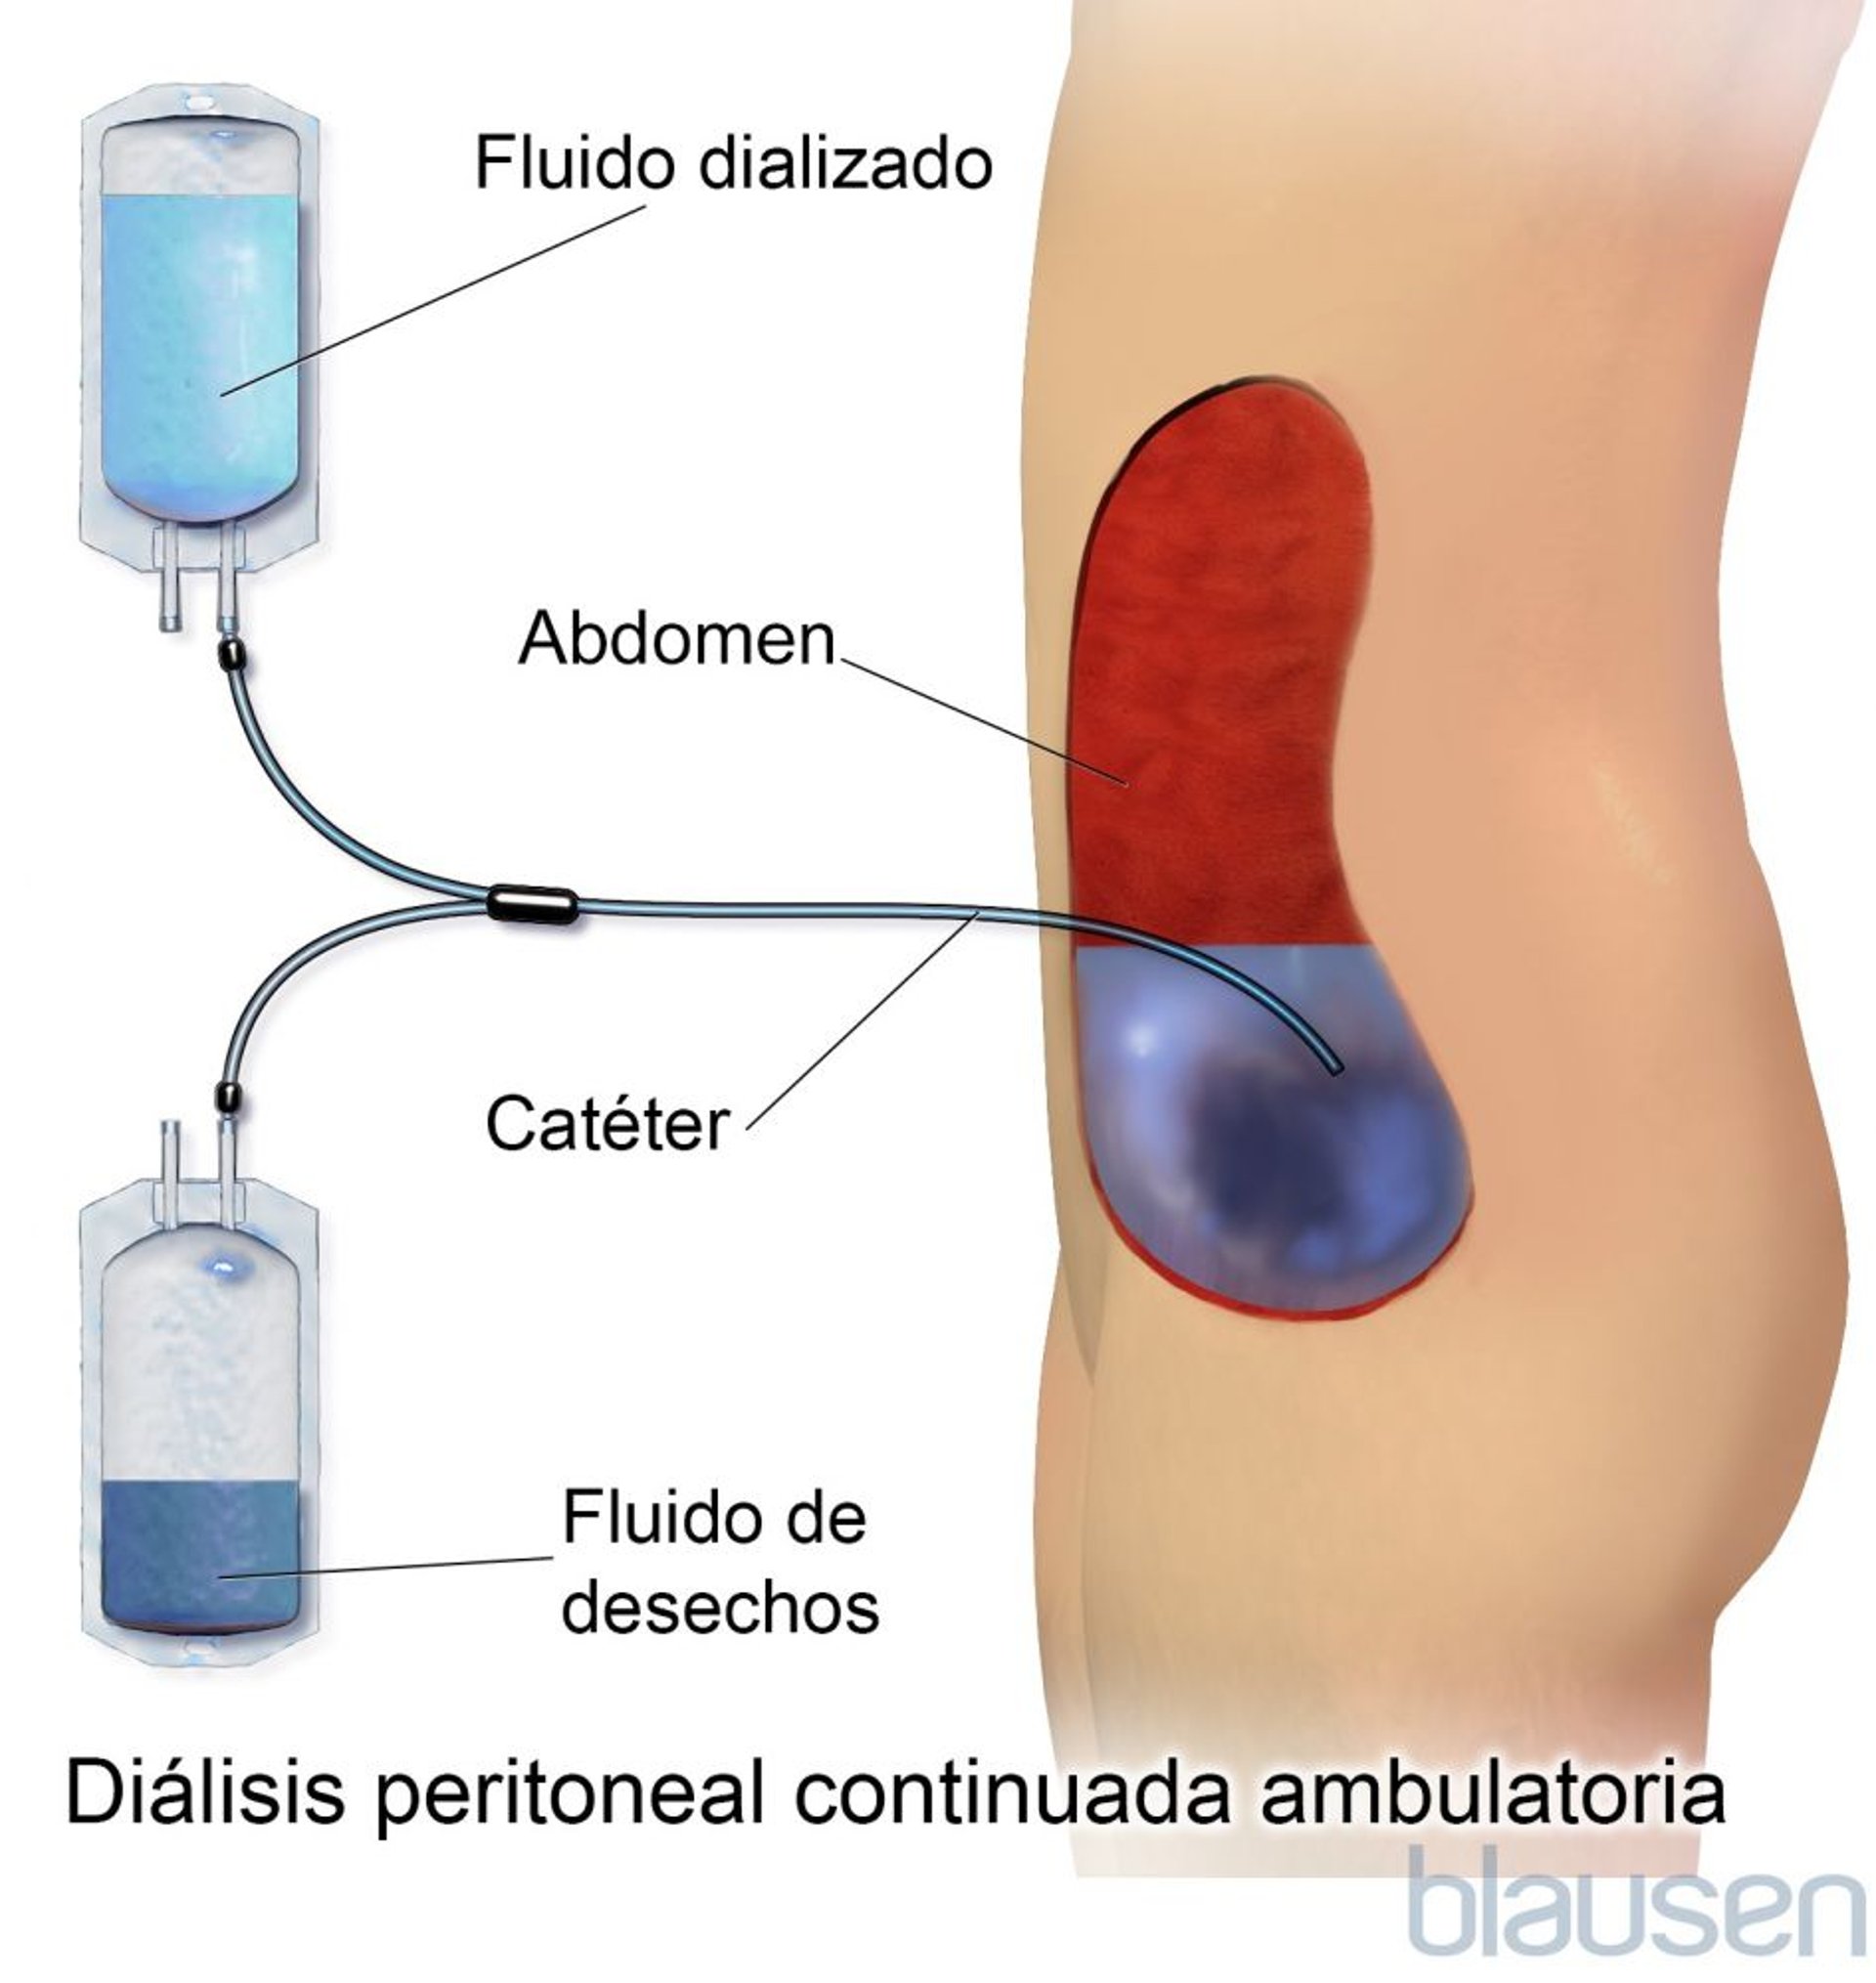 Diálisis peritoneal ambulatoria continua